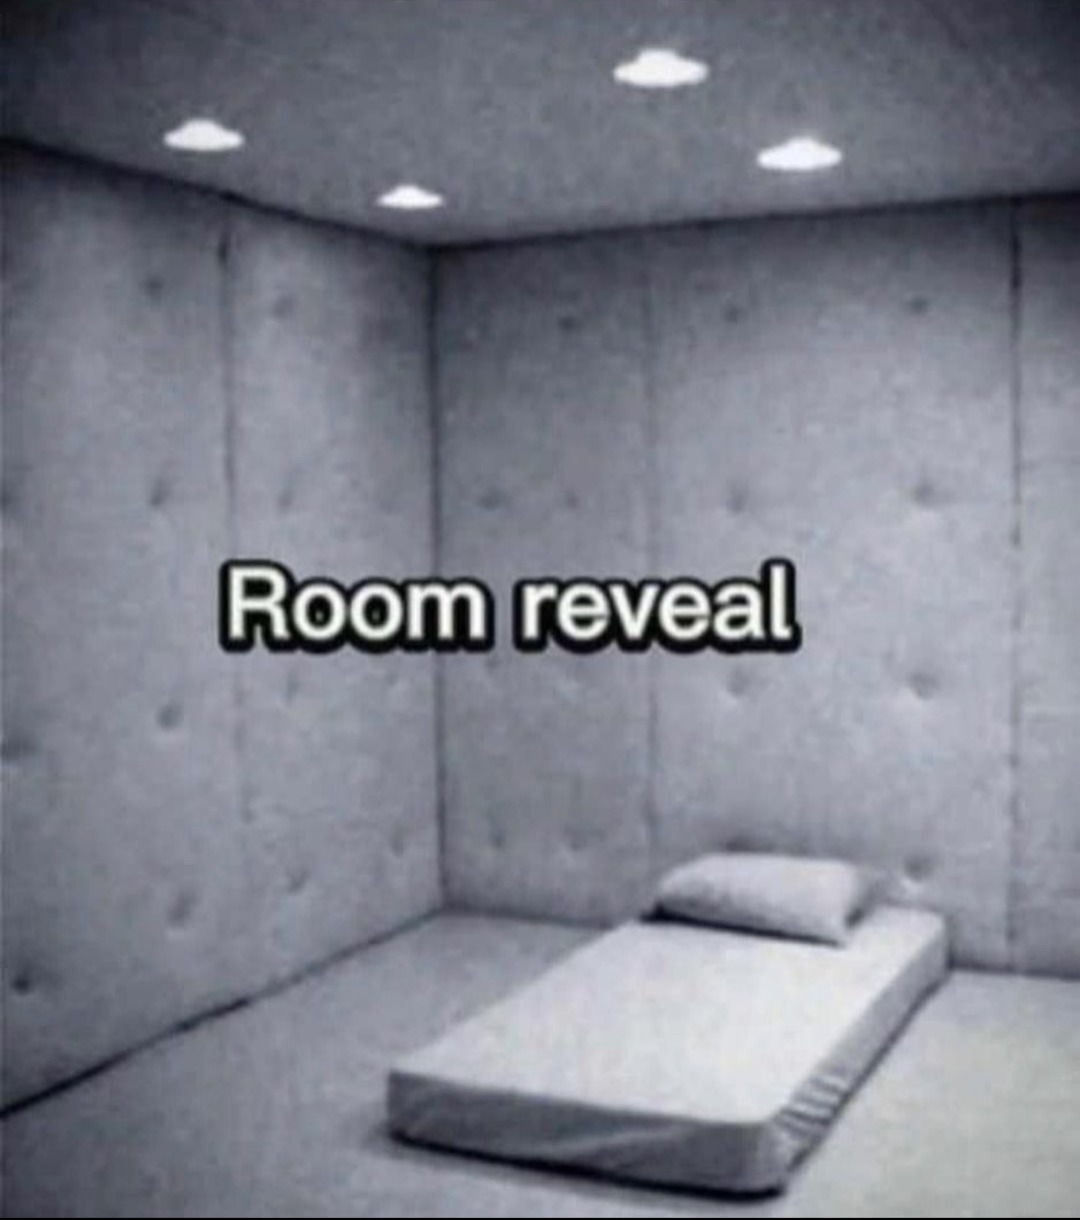 room reveal - meme